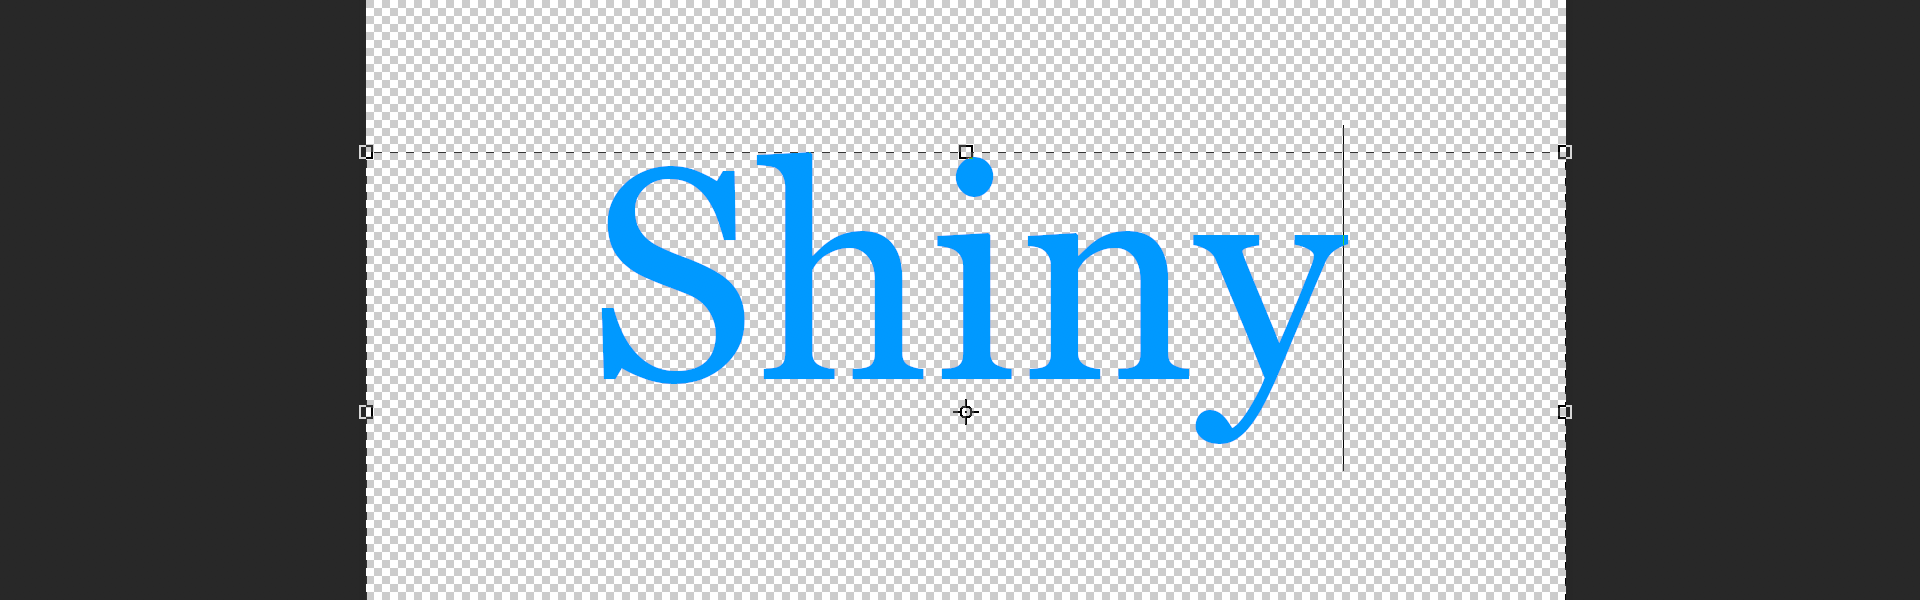 Shiny Text: Step 2